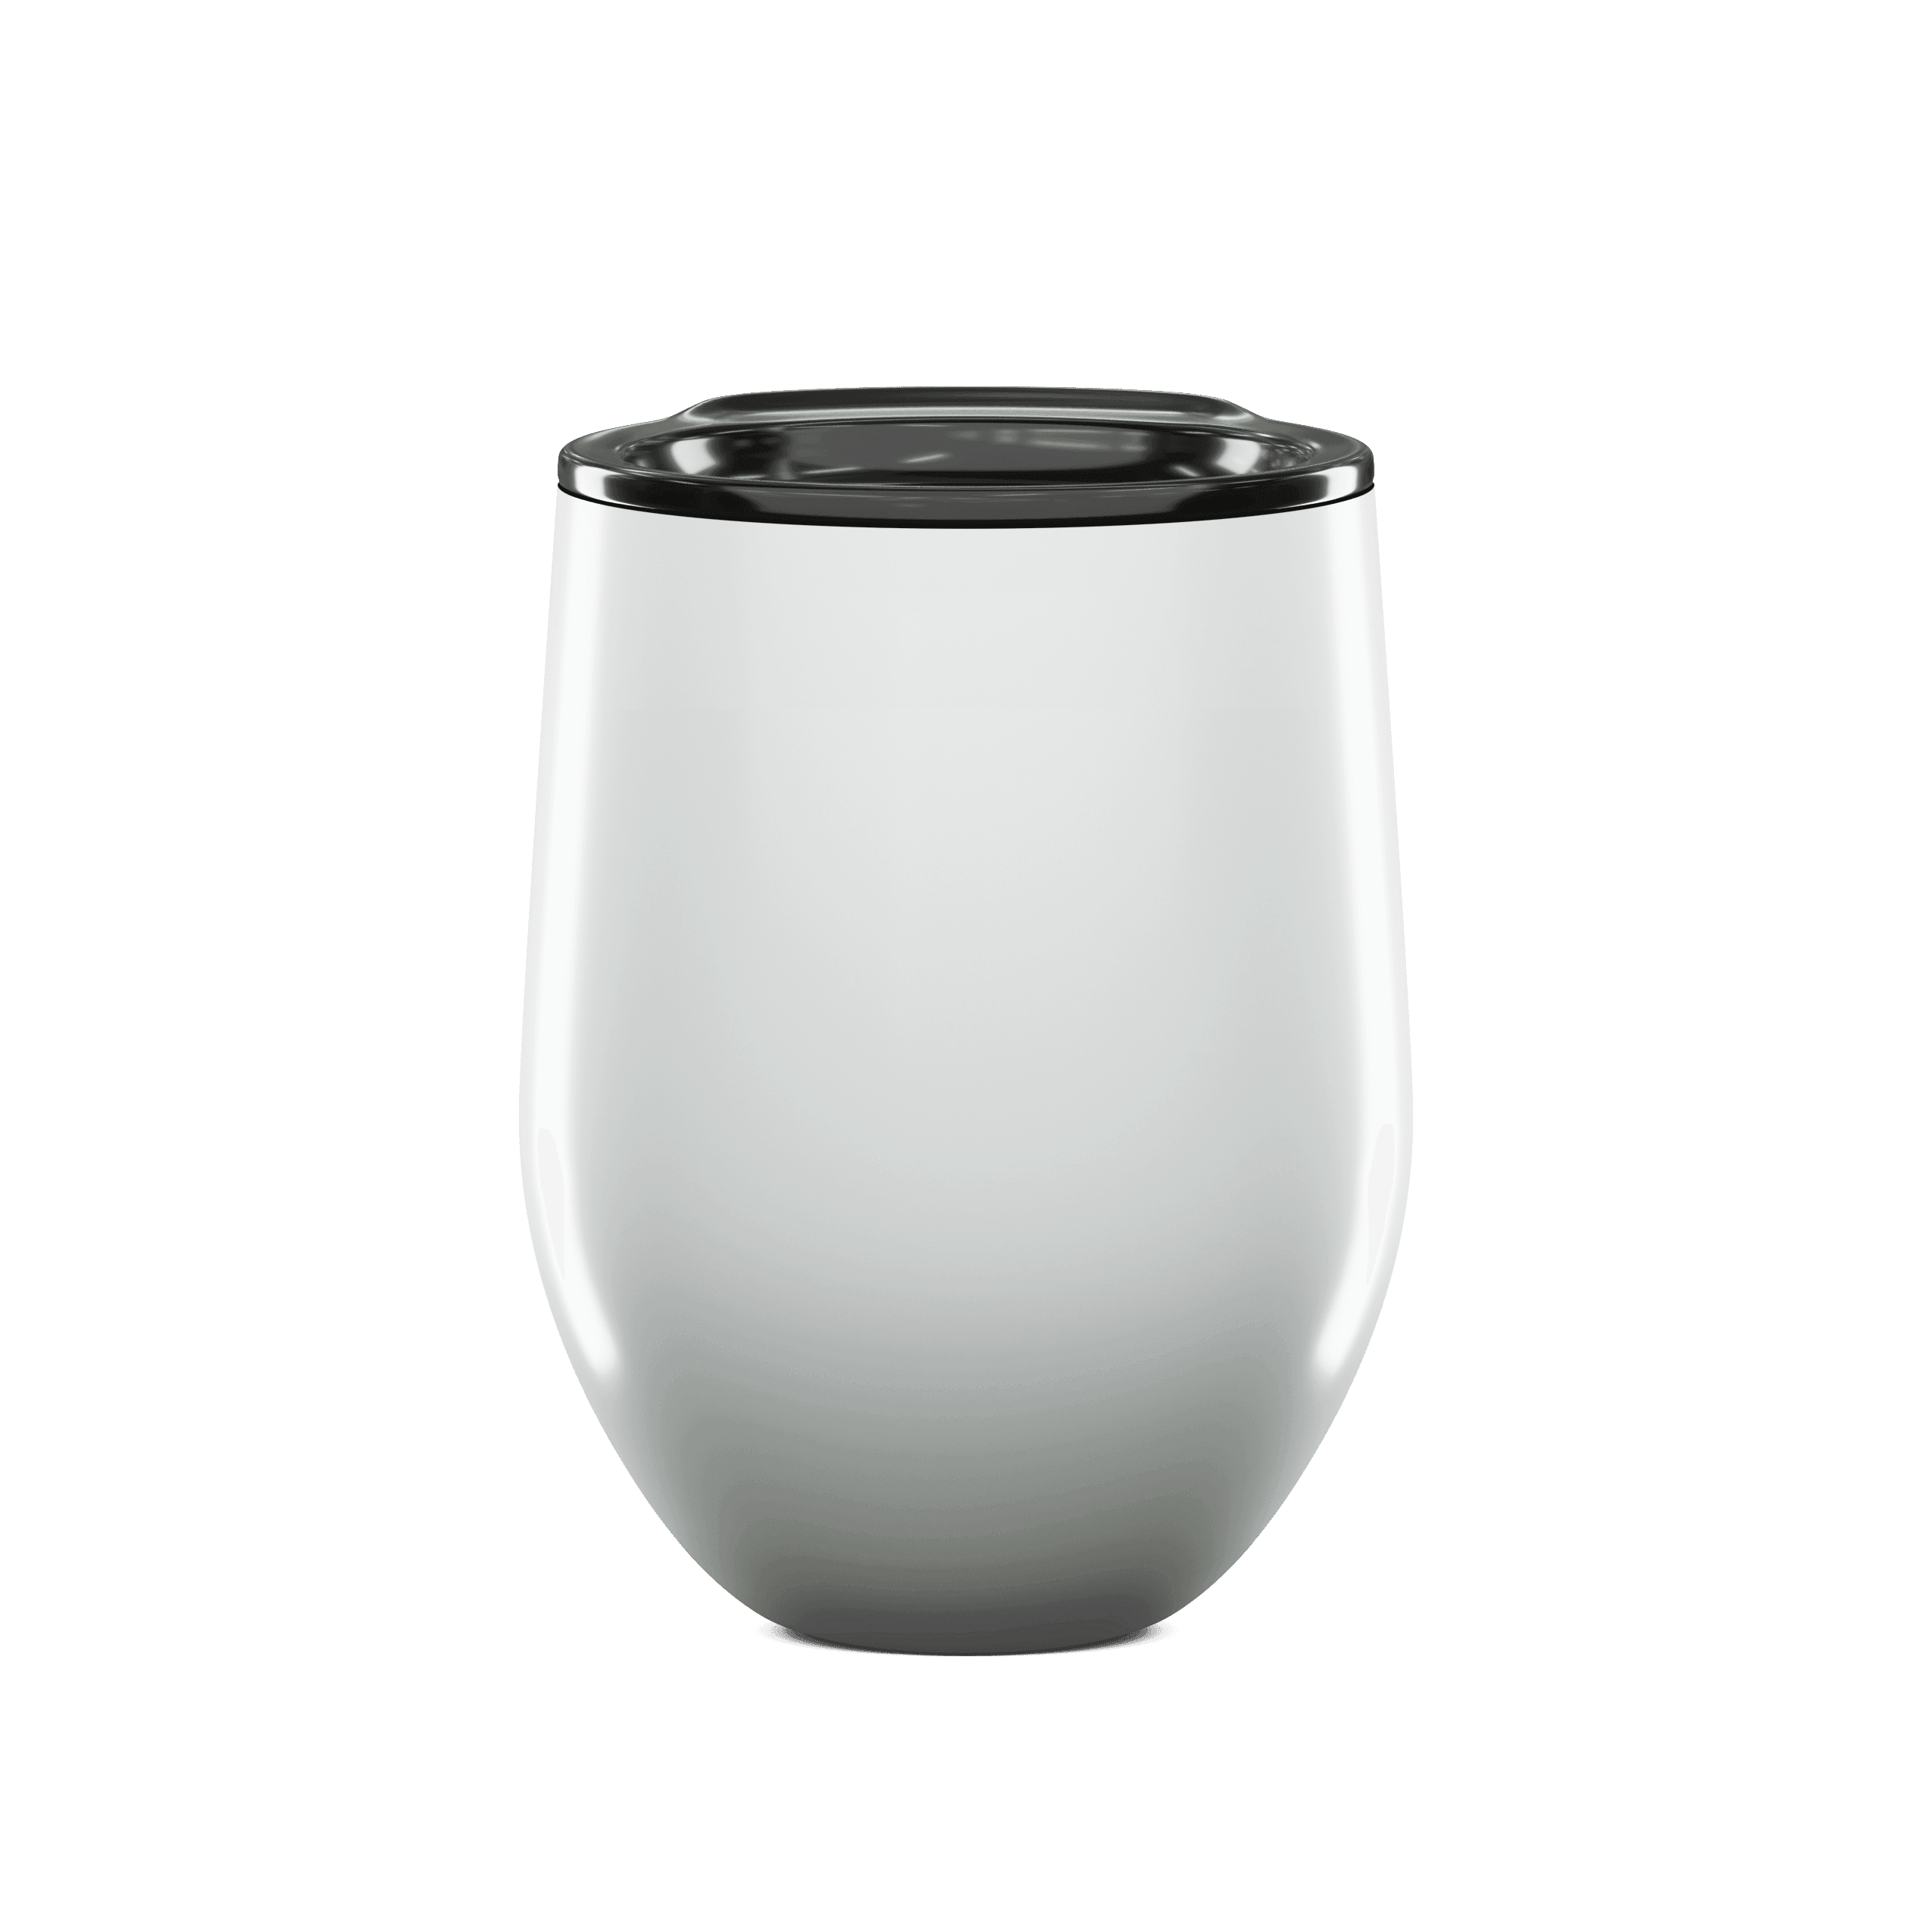 Wholesale 10 oz sublimation Insulated Mug - OrcaFlask